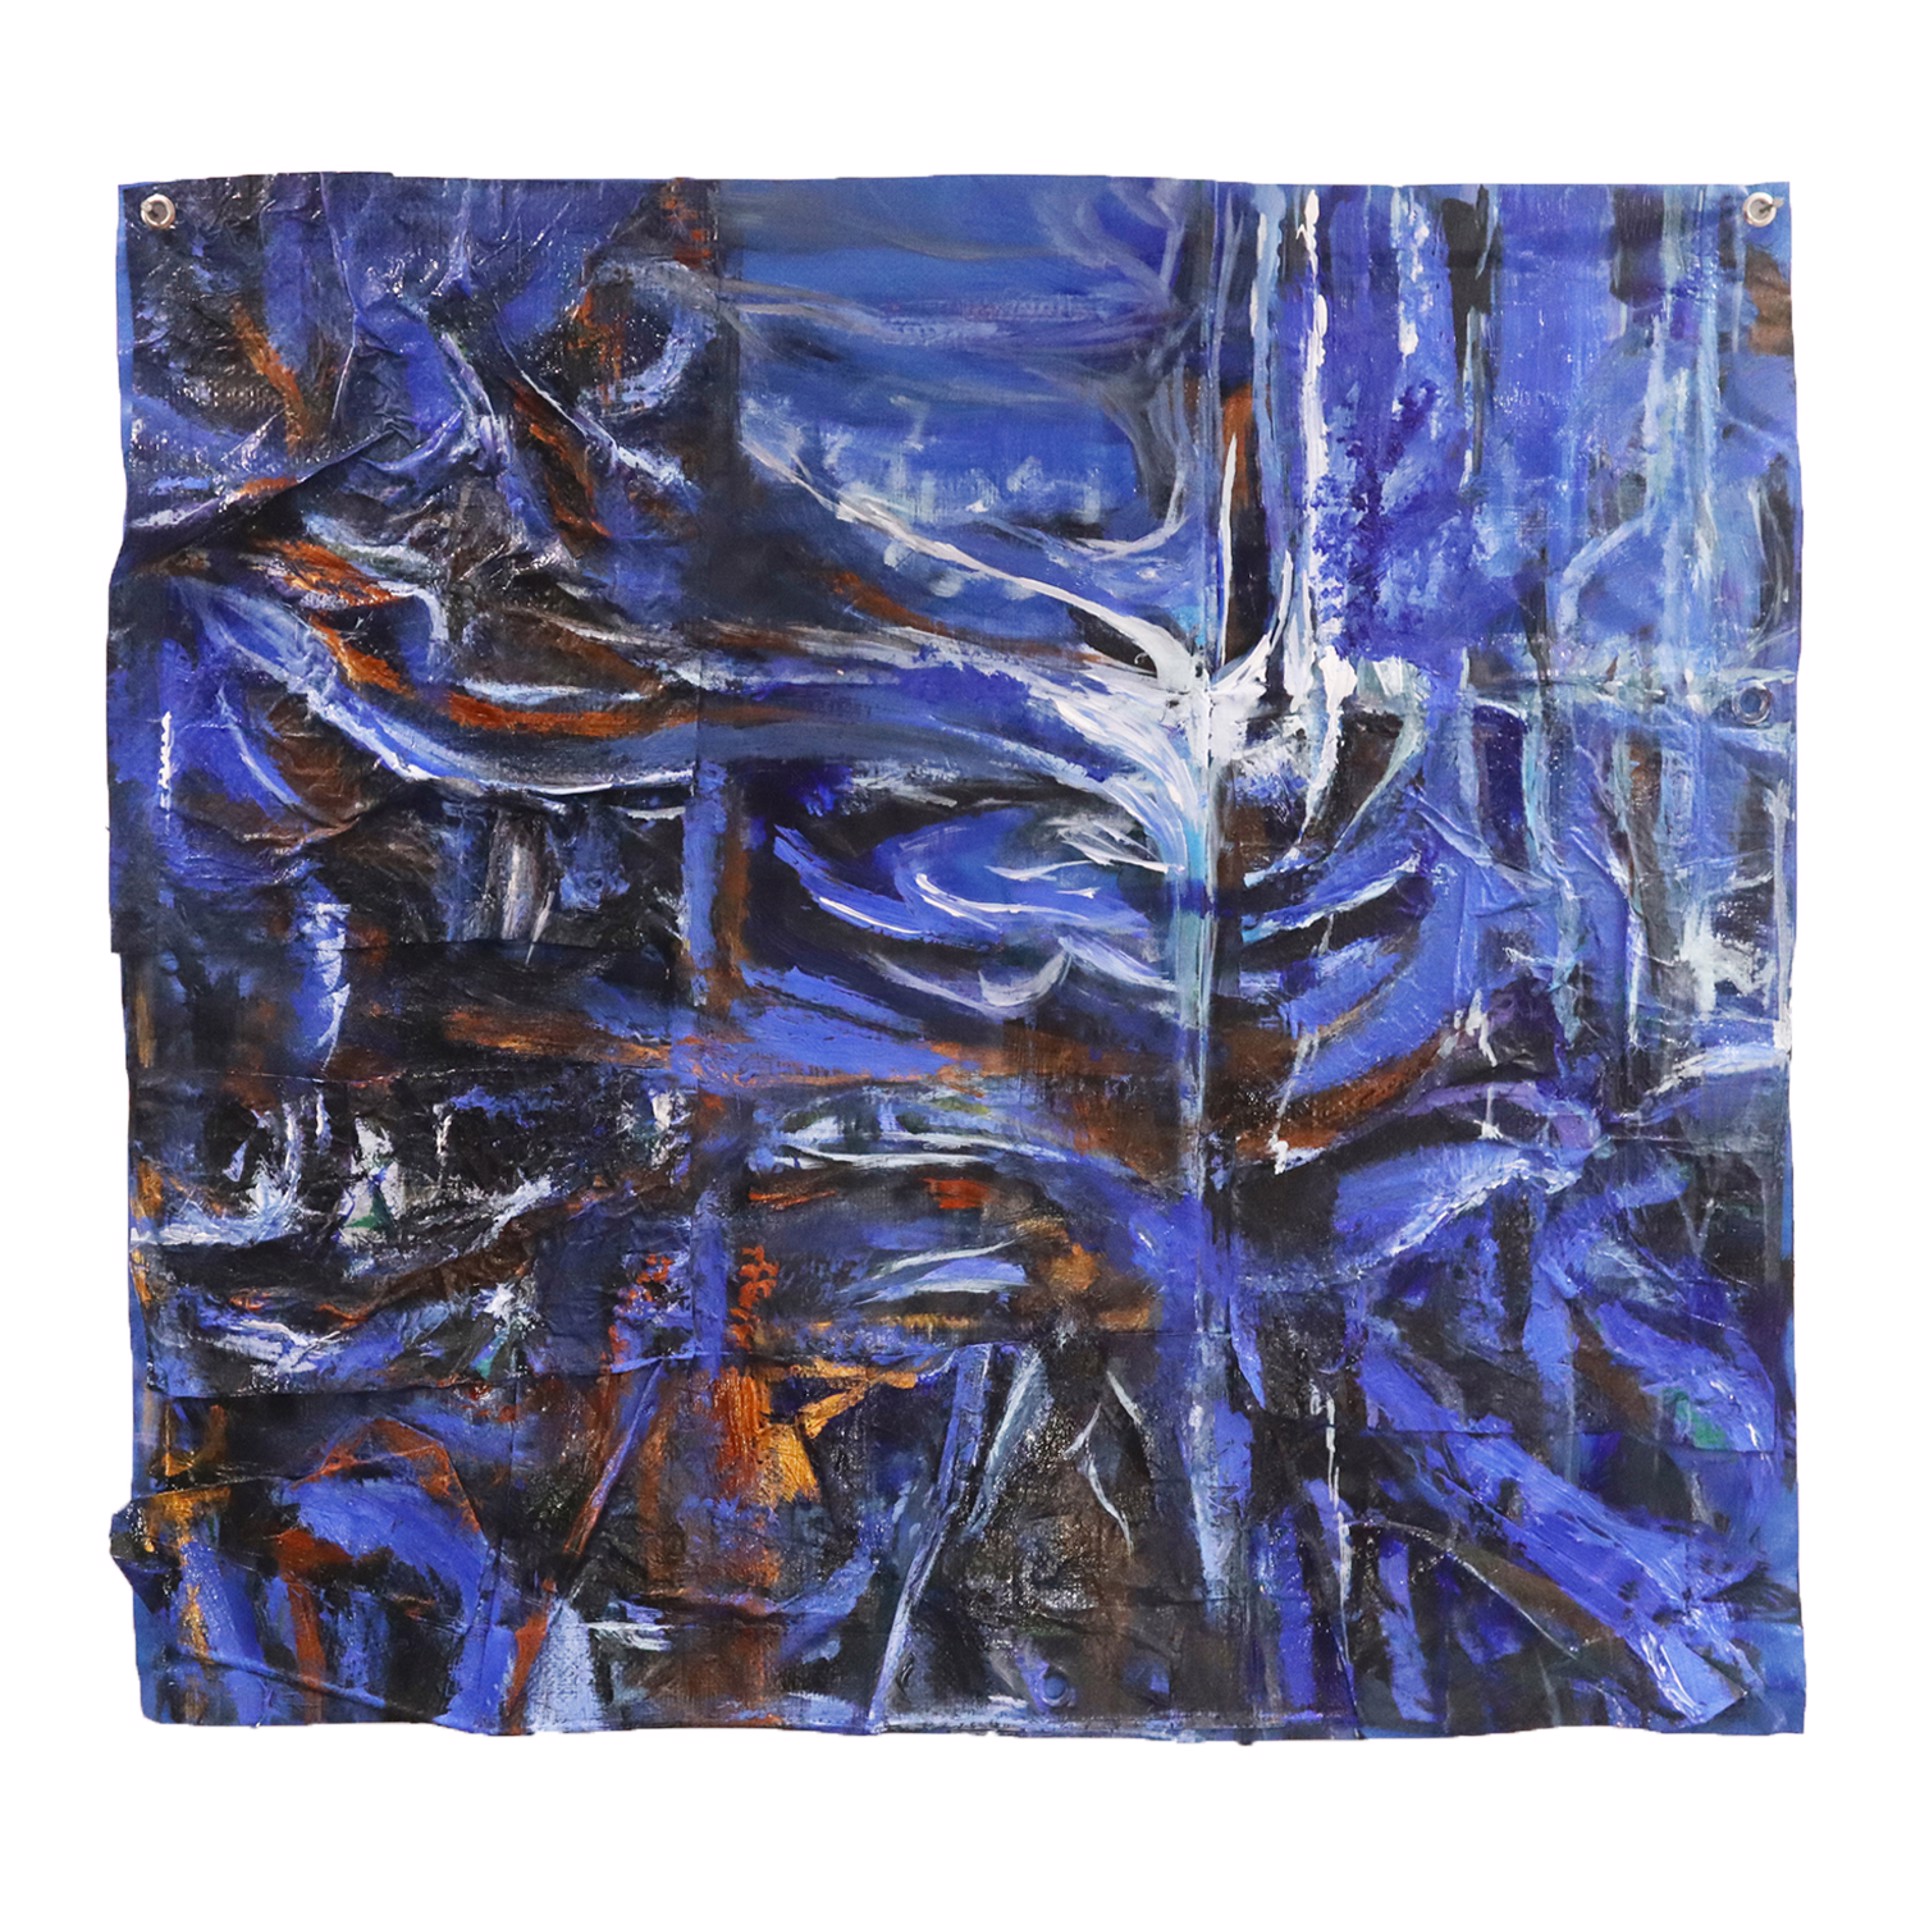 Square 2: Blue Heartbreak, Deep Water by Kathryn-Kay Johnson